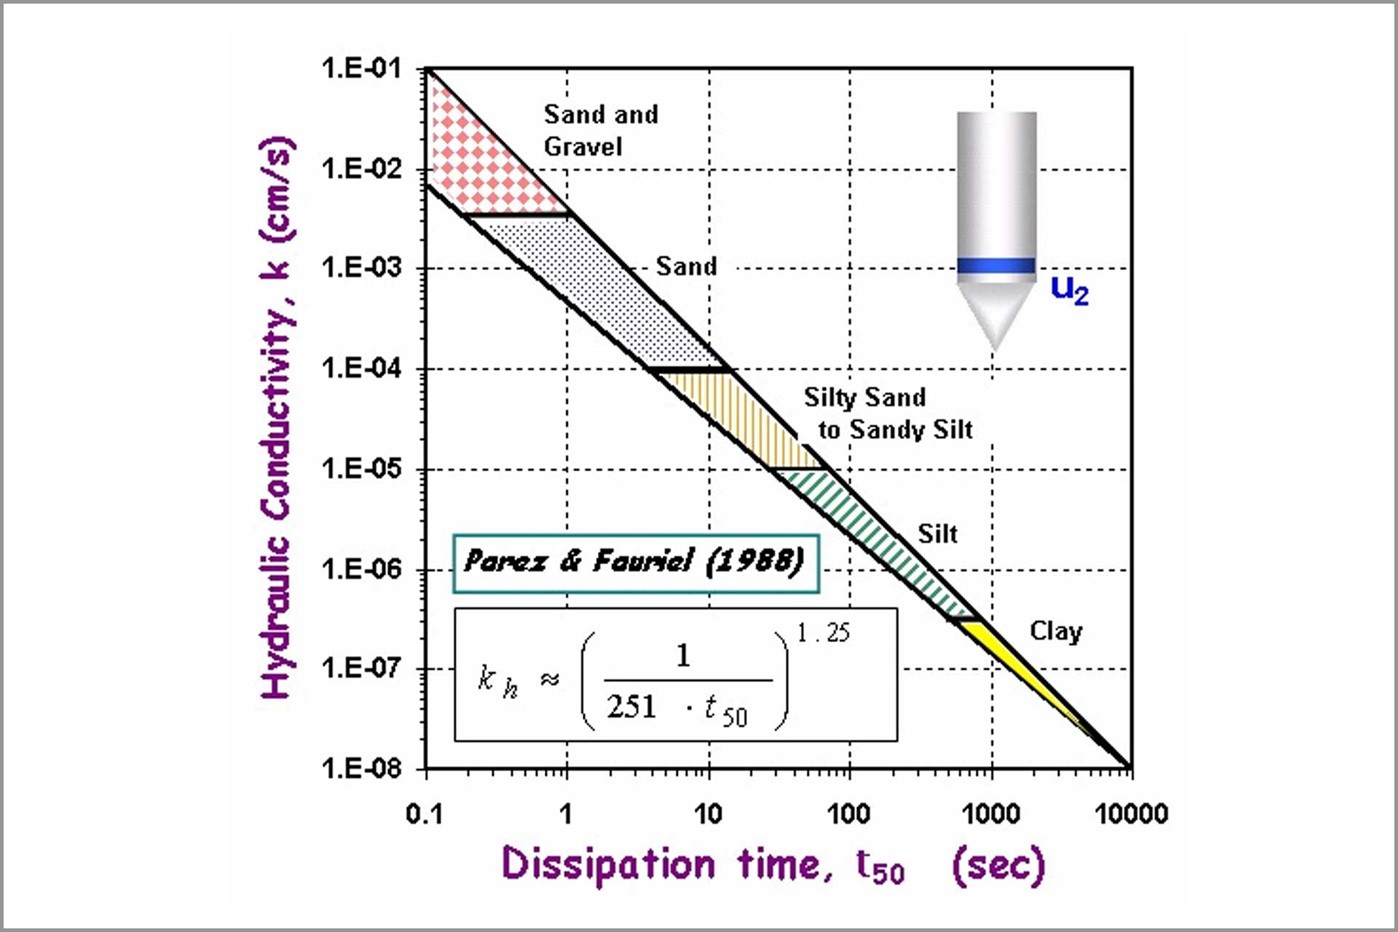 Figure 6: Analysis of t50 | Image source: Parez and Fauriel (1988). "Le piezocone ameliorations apportees a la reconnaissance de sols." Revue Francaise de Geotech 44: 13-27